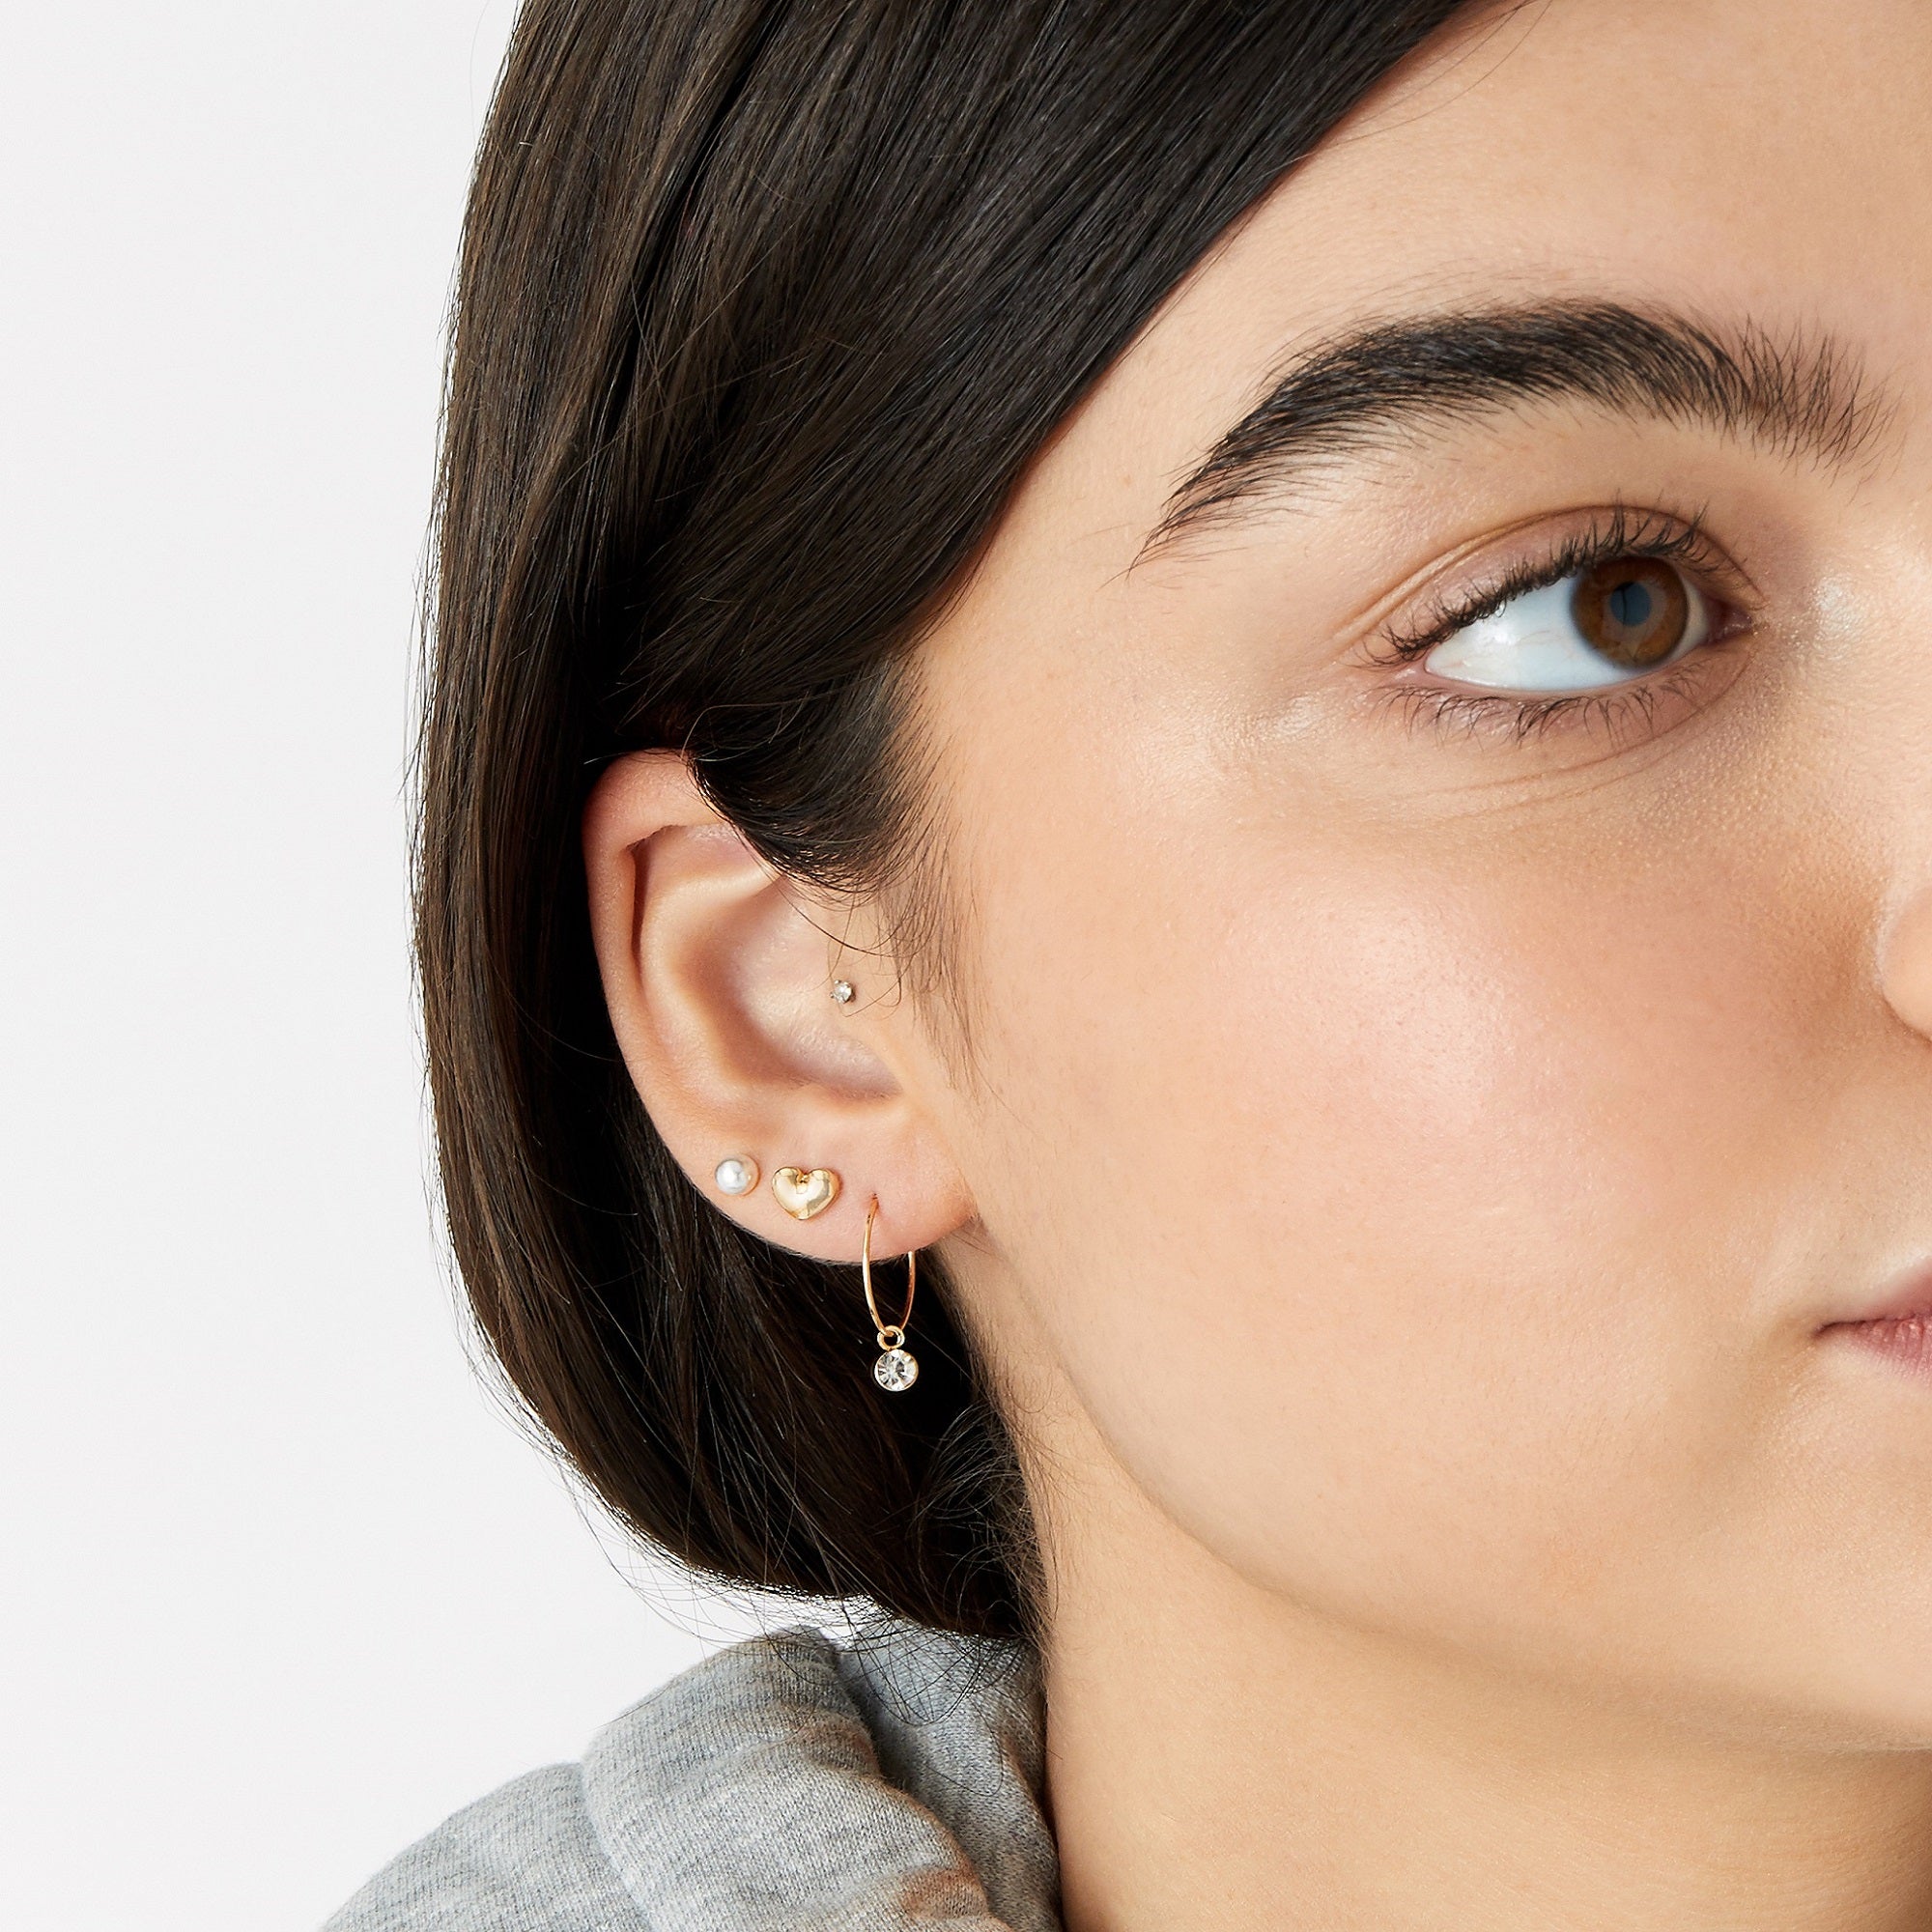 Accessorize London Women's Gold 3 X Heart Hoop Stud Earring Set